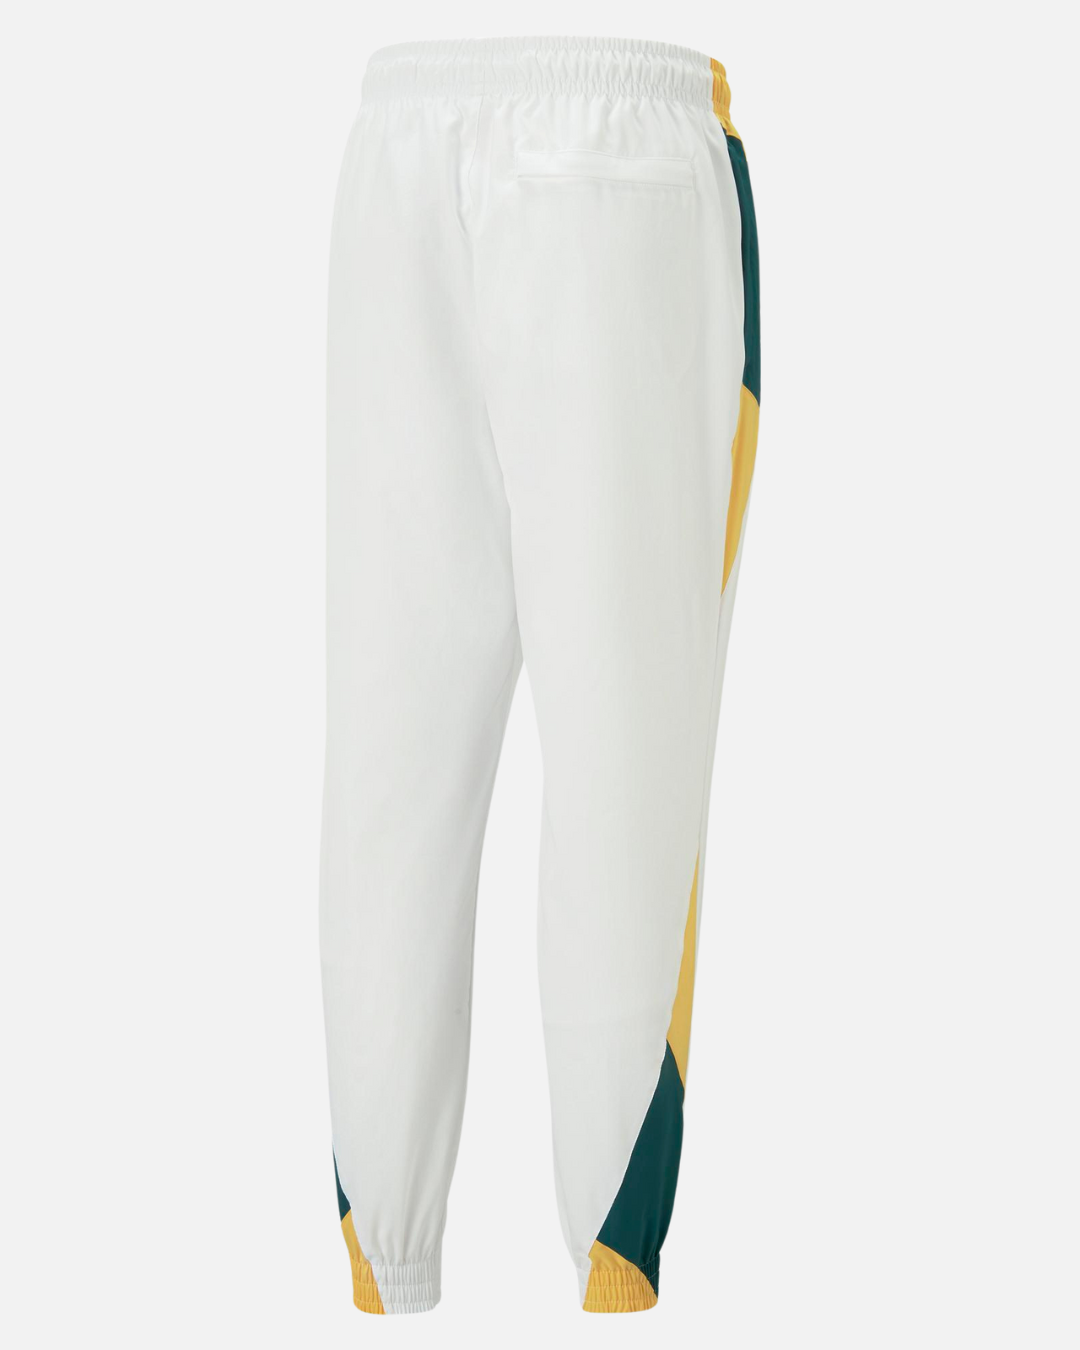 Pantalón de entrenamiento Senegal 2022/2023 - Blanco/Verde/Amarillo